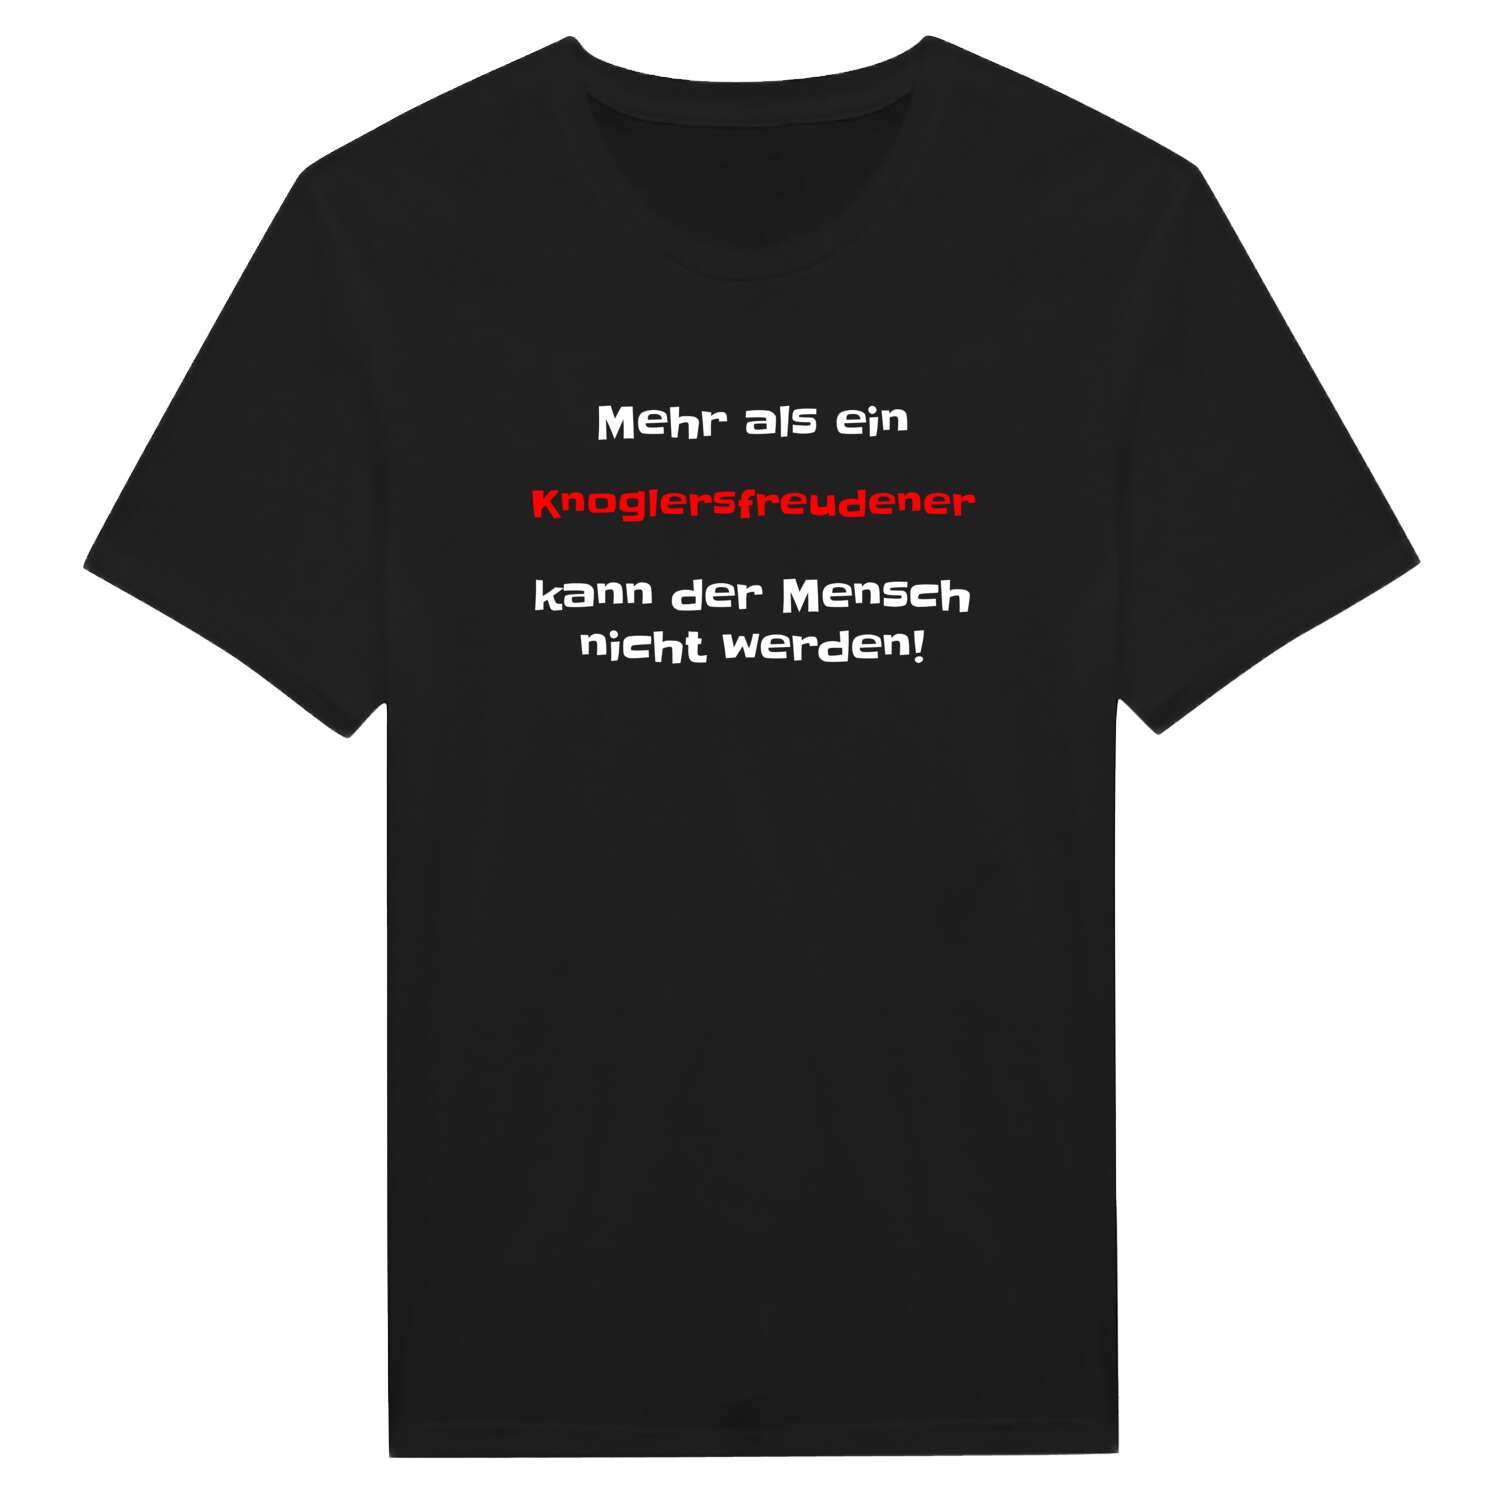 Knoglersfreude T-Shirt »Mehr als ein«